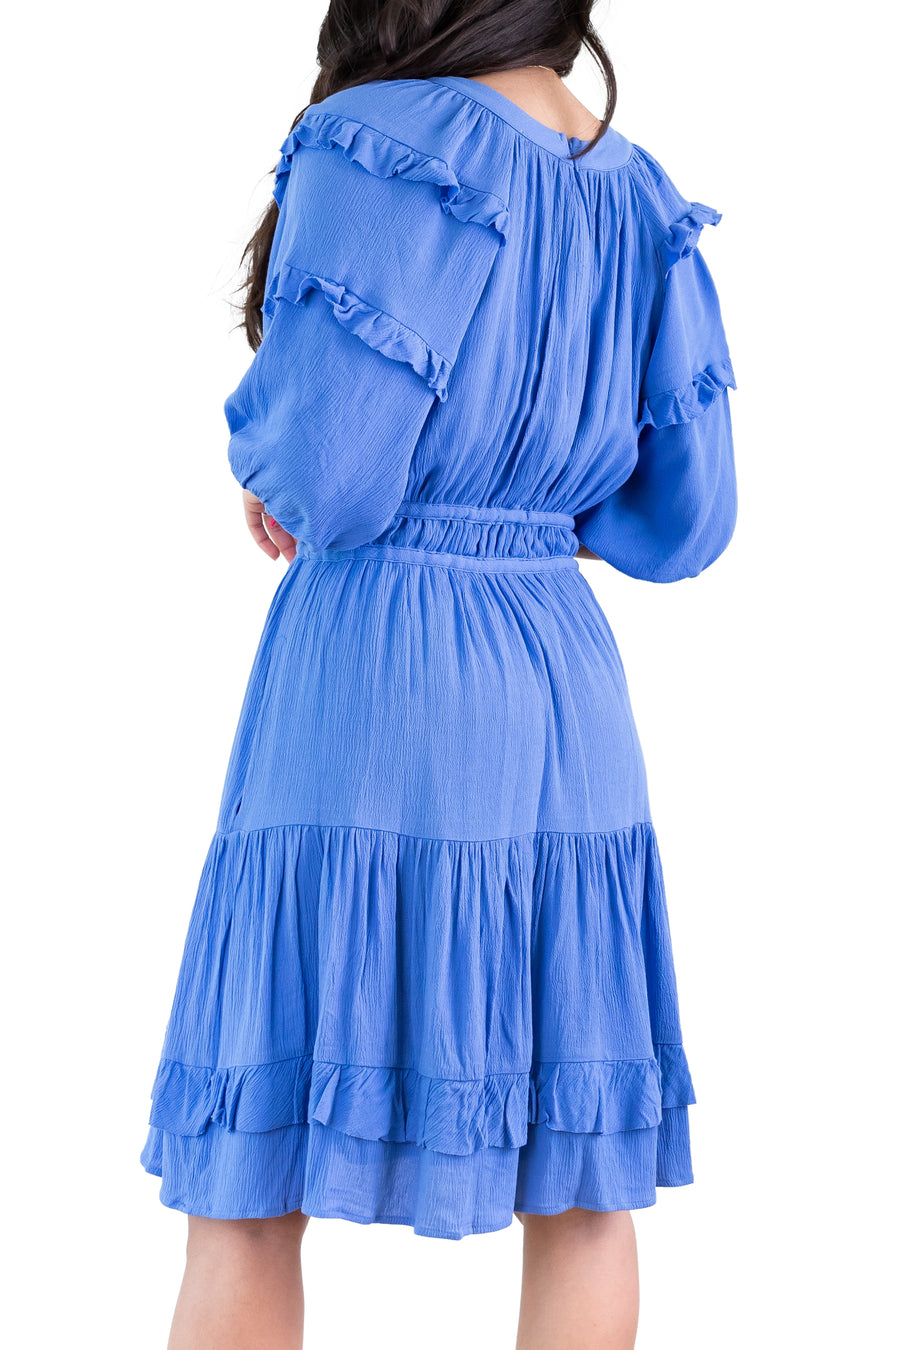 KIRSTEN DRESS (Blue)